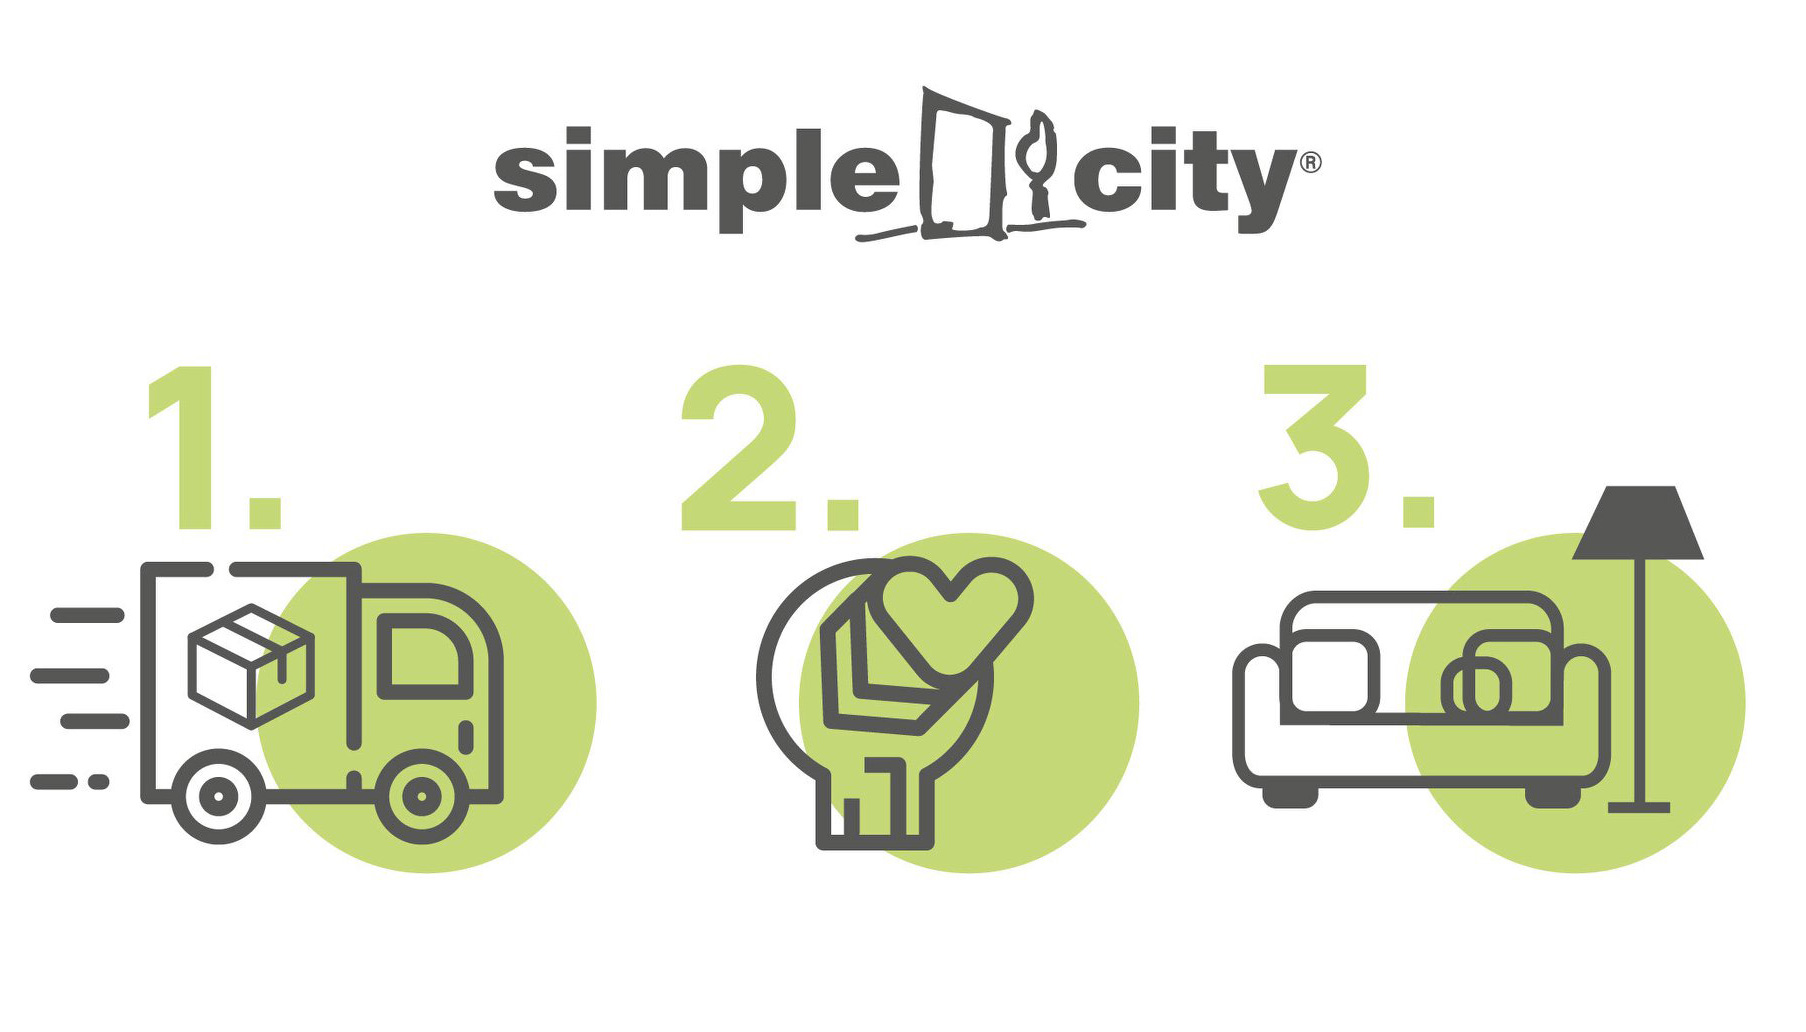 Μεγάλη προσφορά Simple City: Δωρεάν μεταφορά και συναρμολόγηση σε ό,τι αγοράσετε!